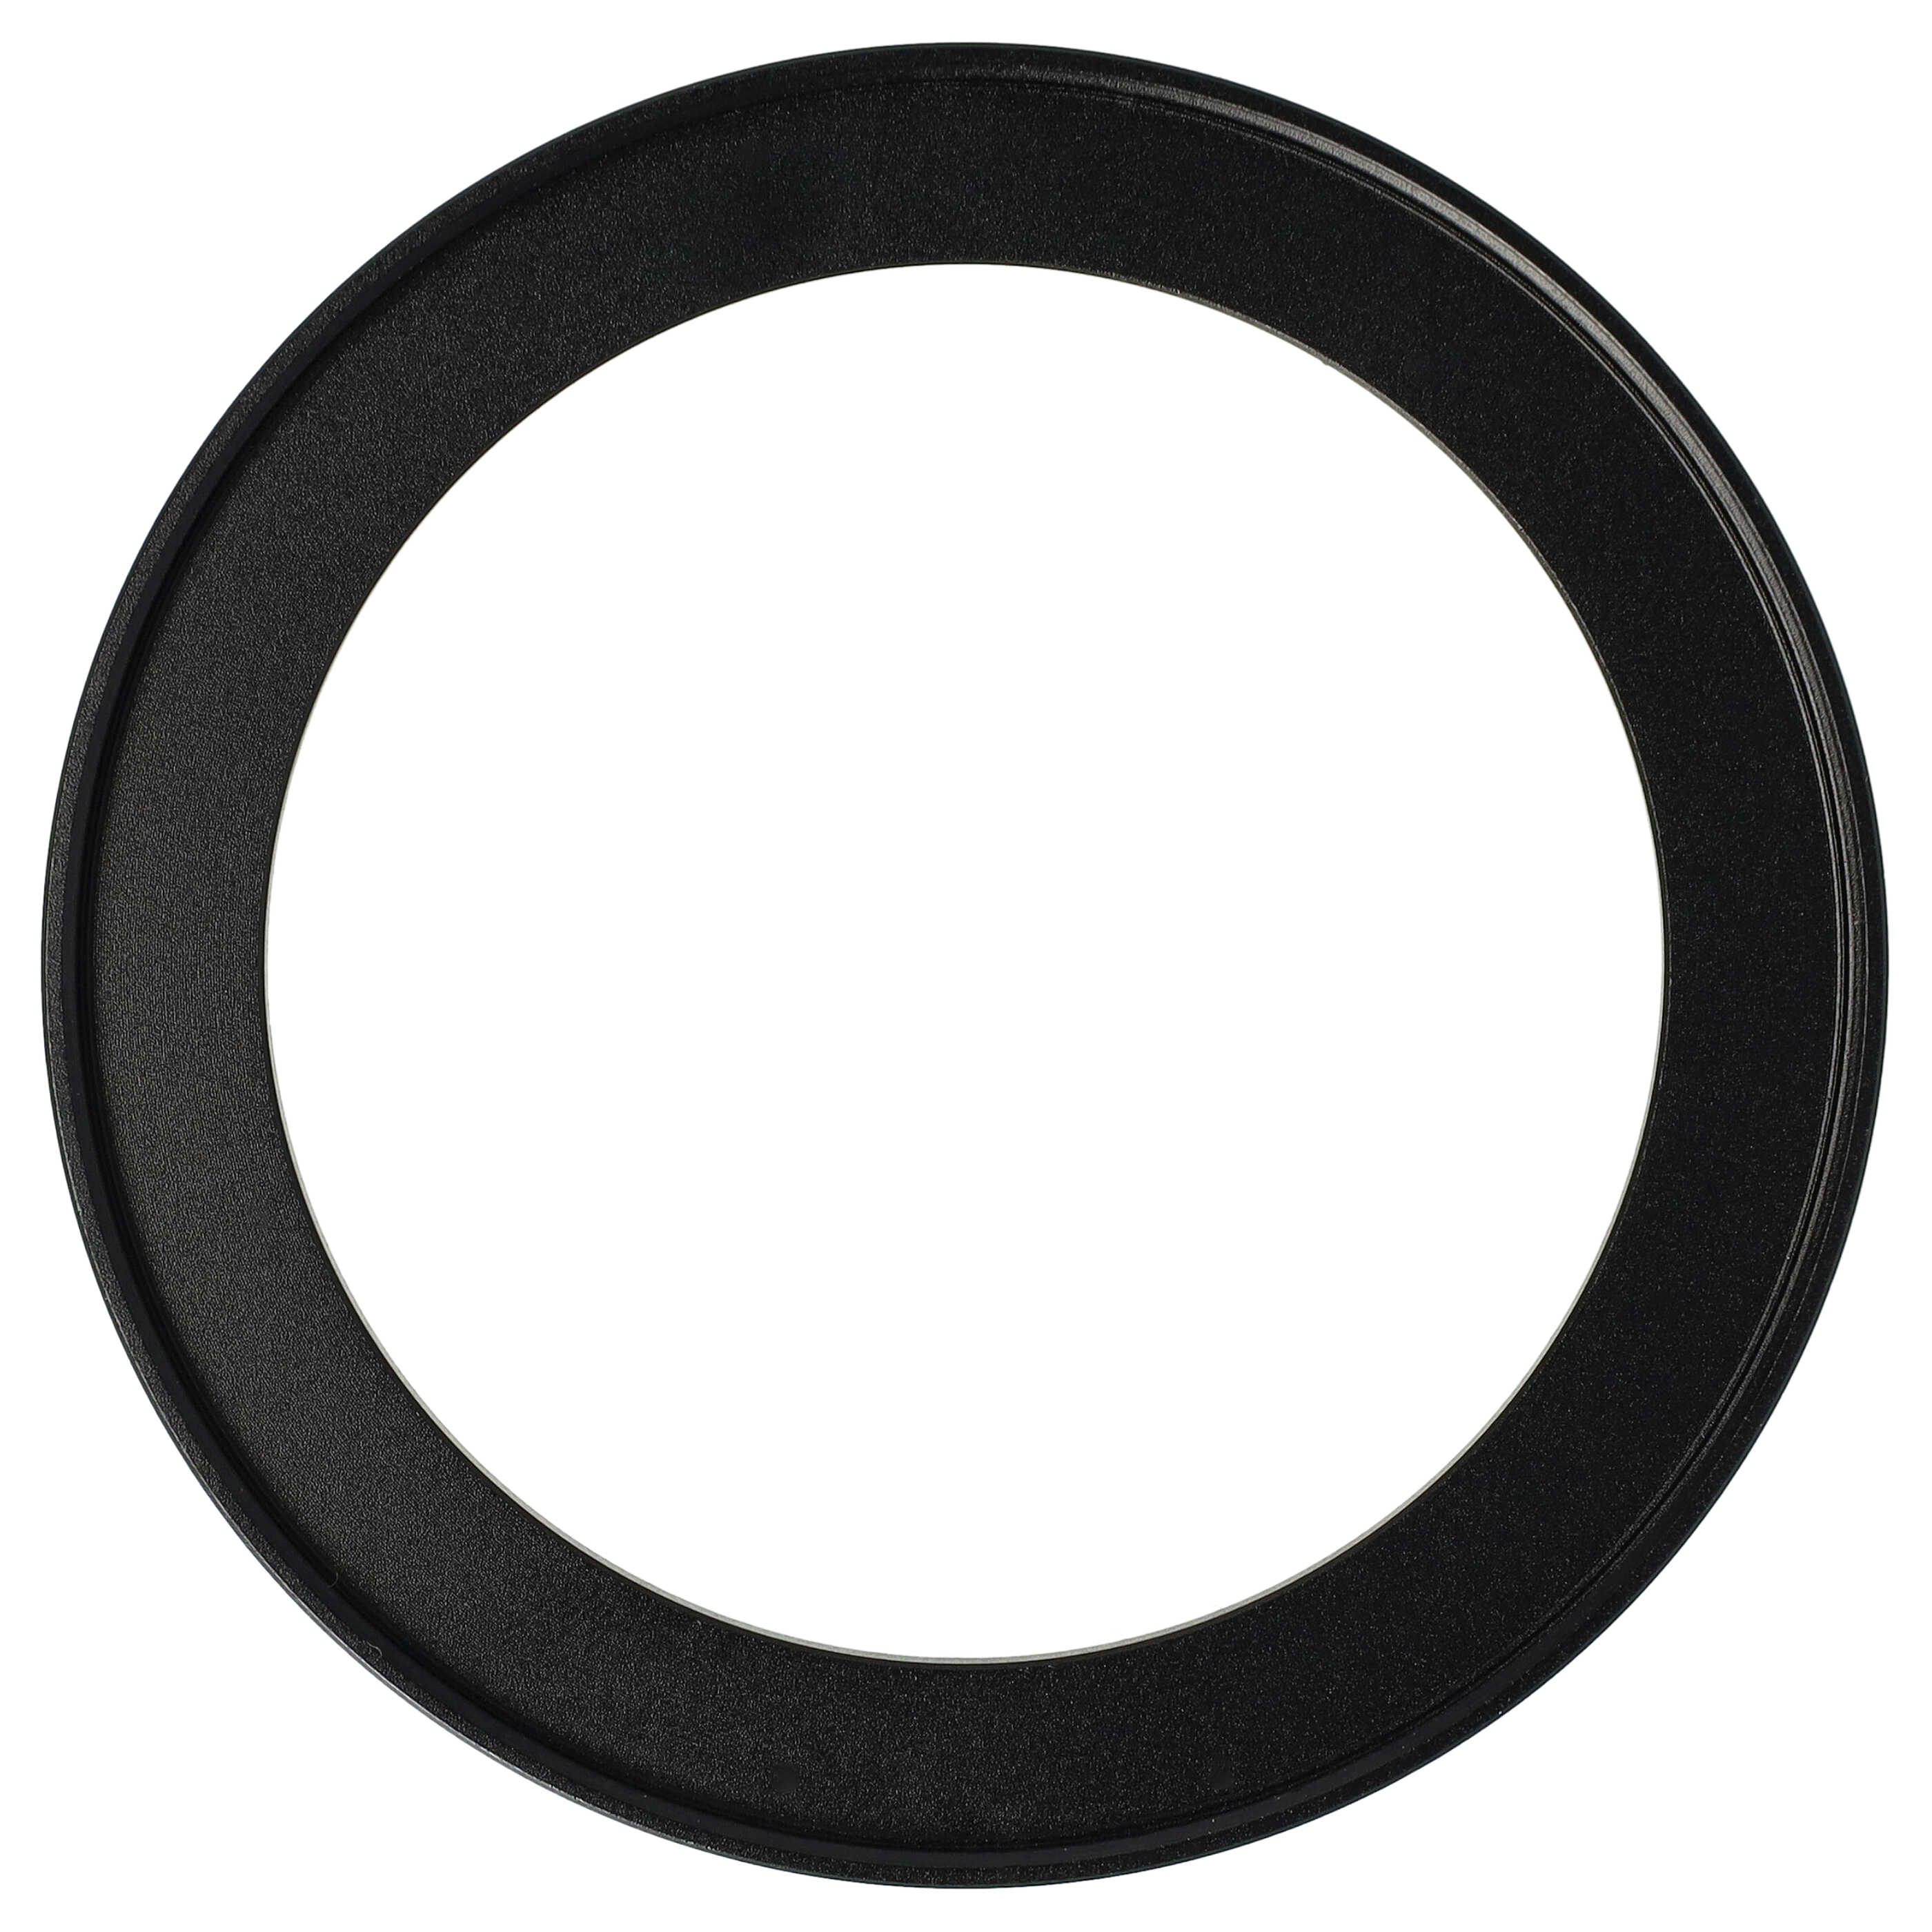 Step-Up-Ring Adapter 67 mm auf 82 mm passend für diverse Kamera-Objektive - Filteradapter